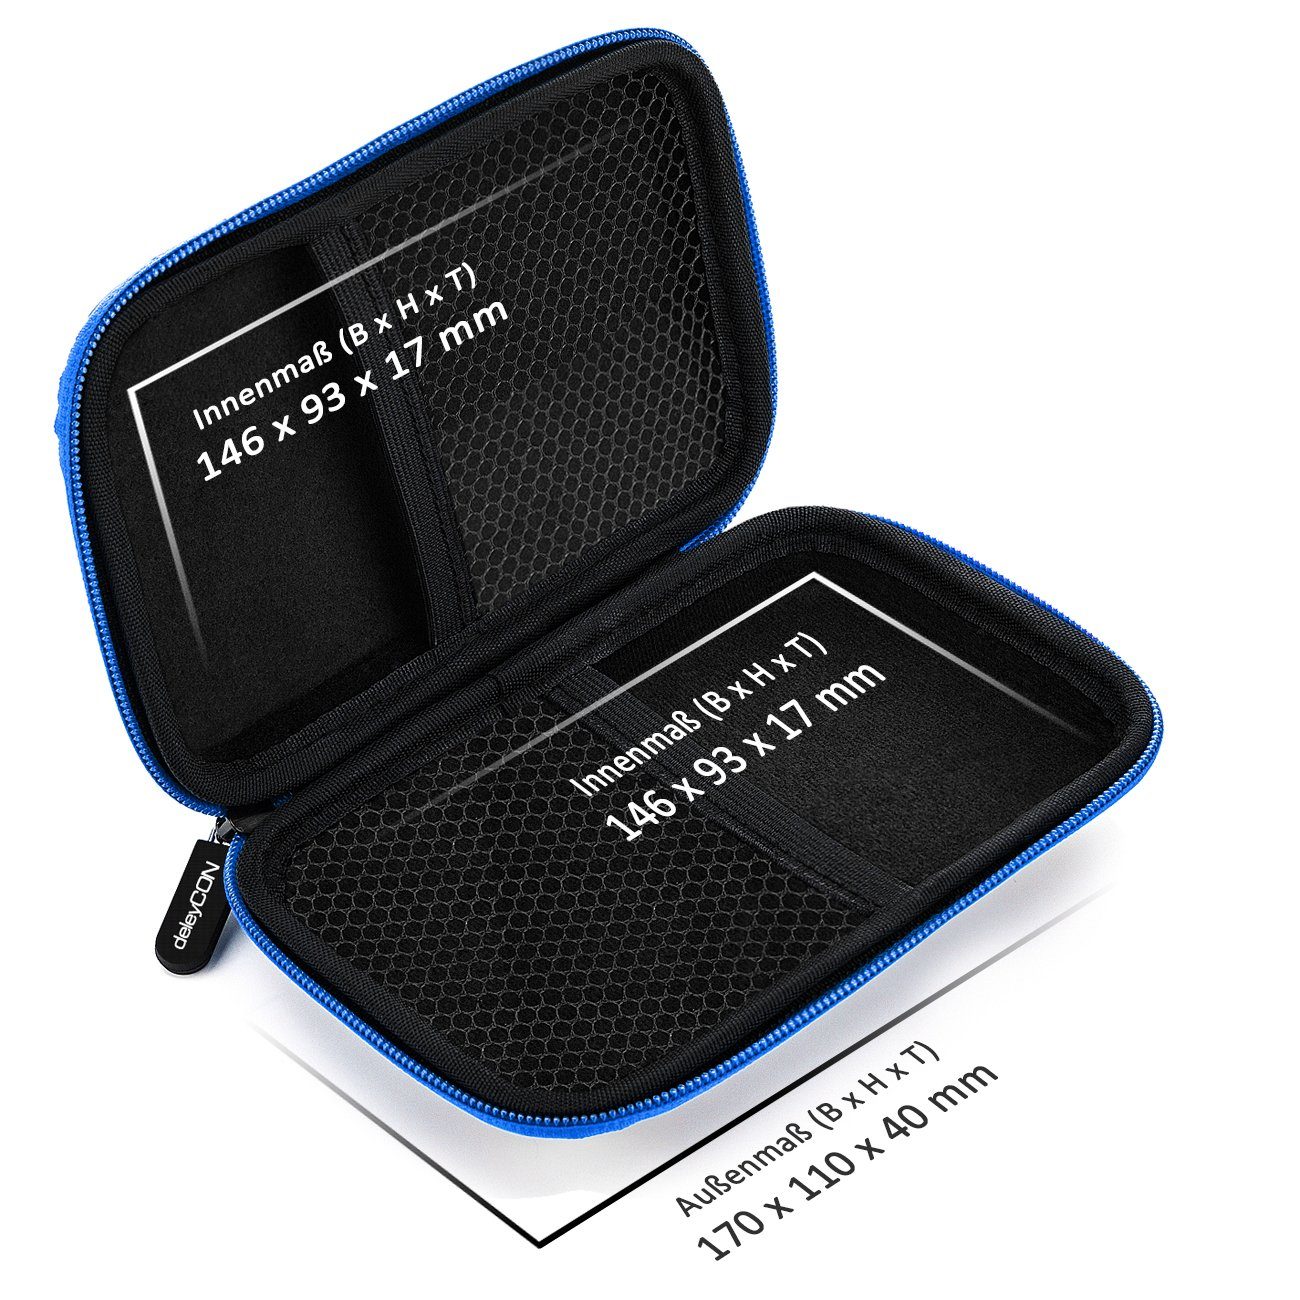 deleyCON deleyCON Fächer Festplattentasche Case 2,5" Festplattentasche HDD 2 Zoll SSD für